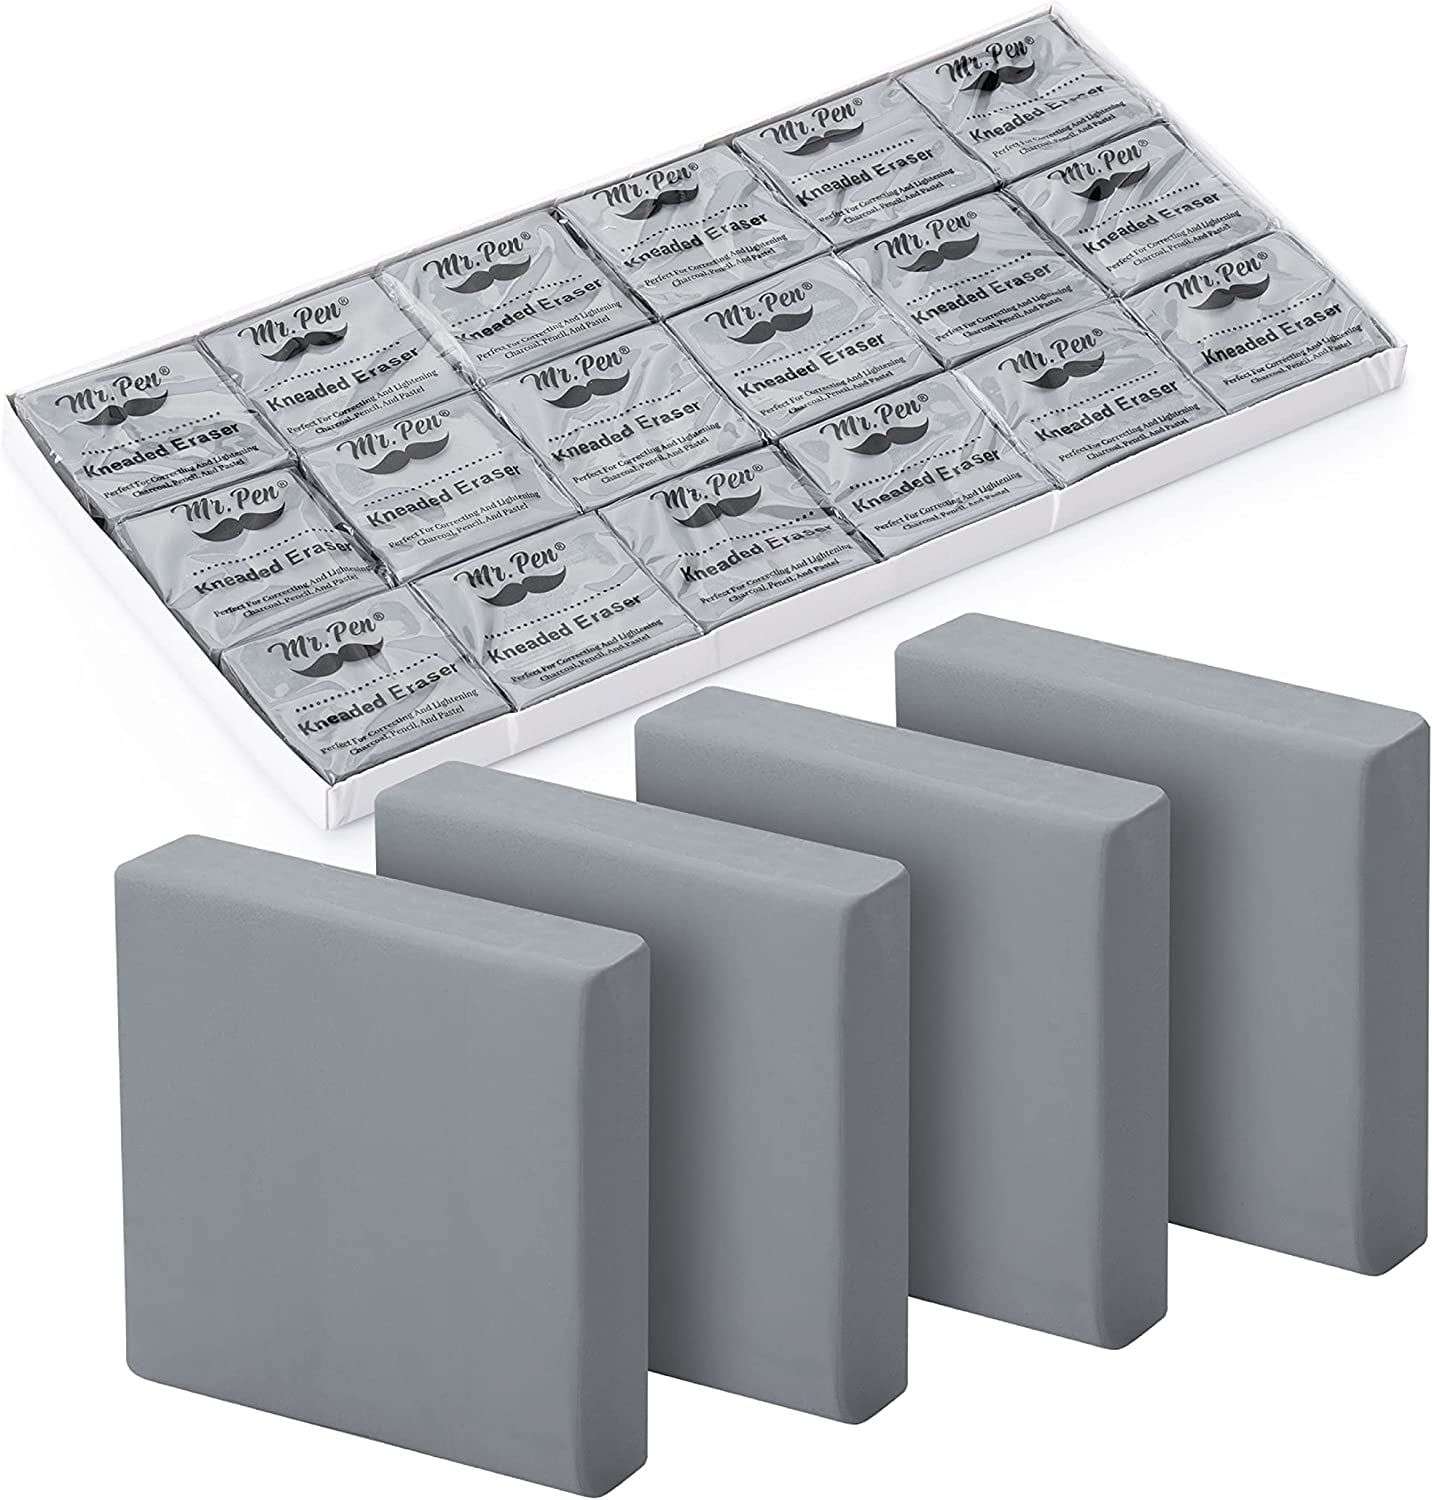  Derwent Kneadable Eraser, Gray (2301976) : Artist Supply  Erasers : Office Products